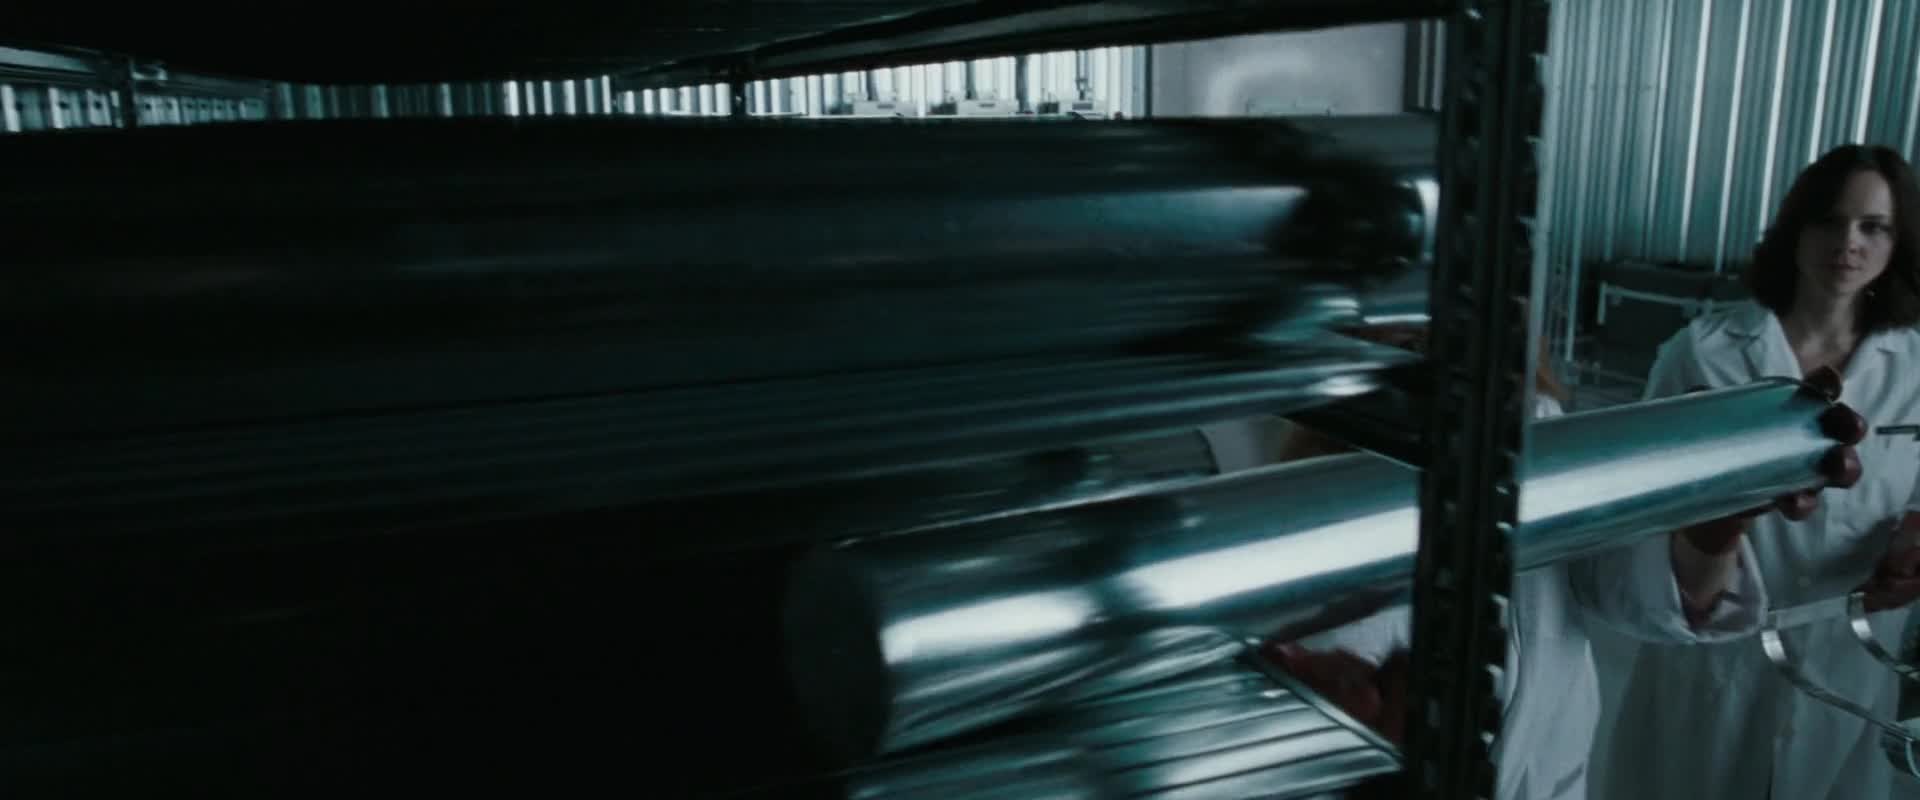 Bílá smrt (Kate Beckinsale,Gabriel Macht 2009 Thriller Mysteriózní Akční Krimi 1080p ) Cz dabing mkv